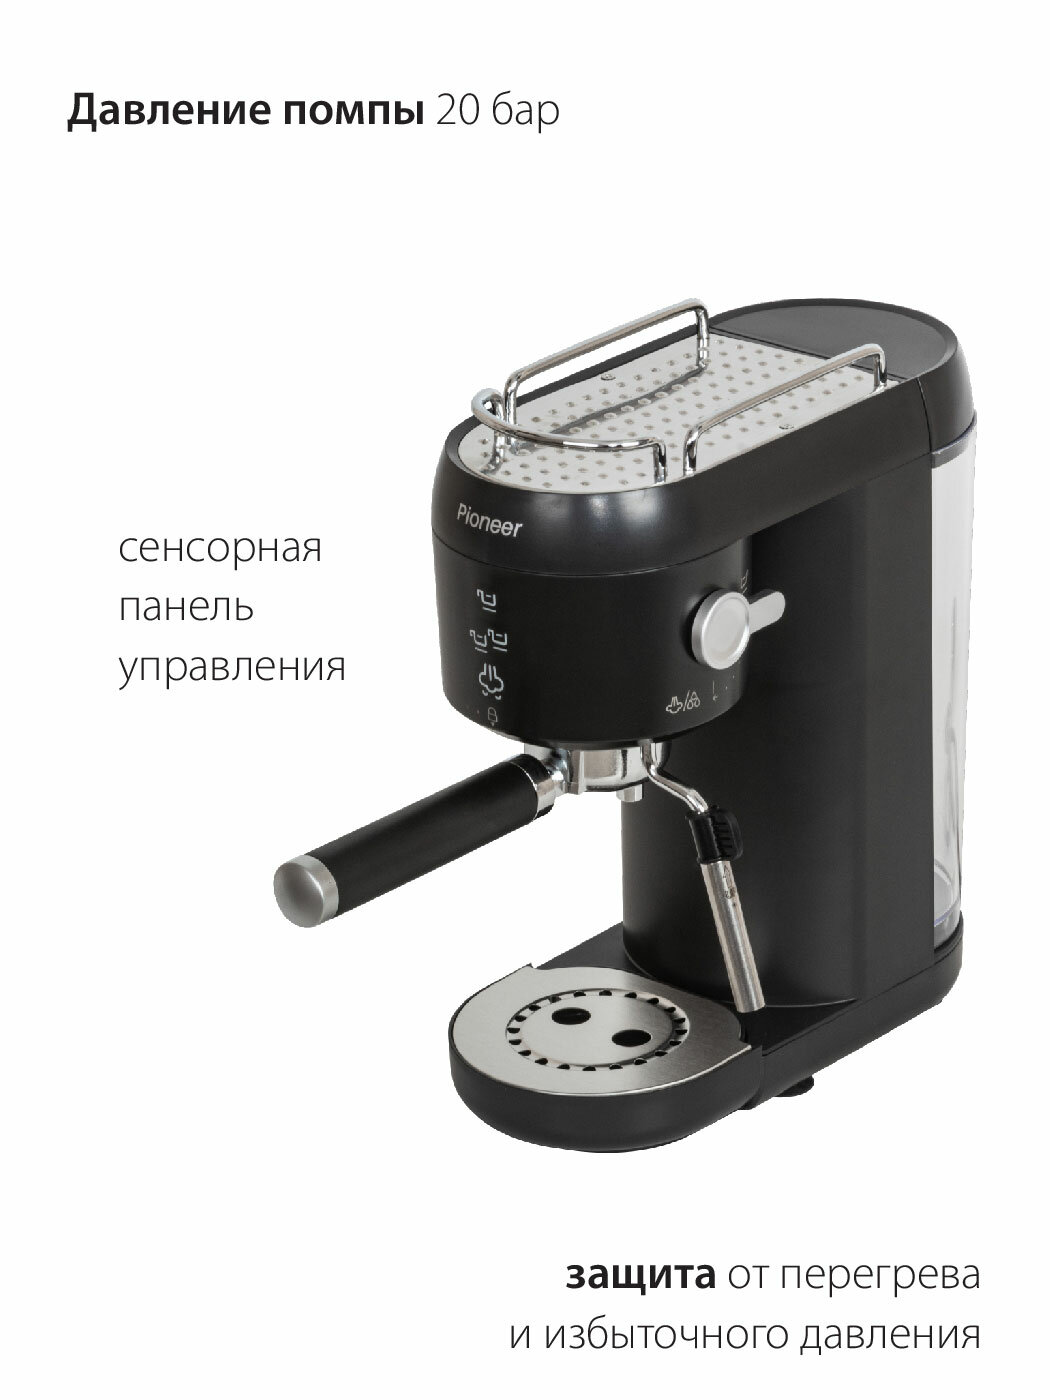 Рожковая кофеварка профессиональная для дома Pioneer CM109P black с капучинатором, сенсорное управление, подогрев чашек, мгновенный нагрев, 1400 Вт